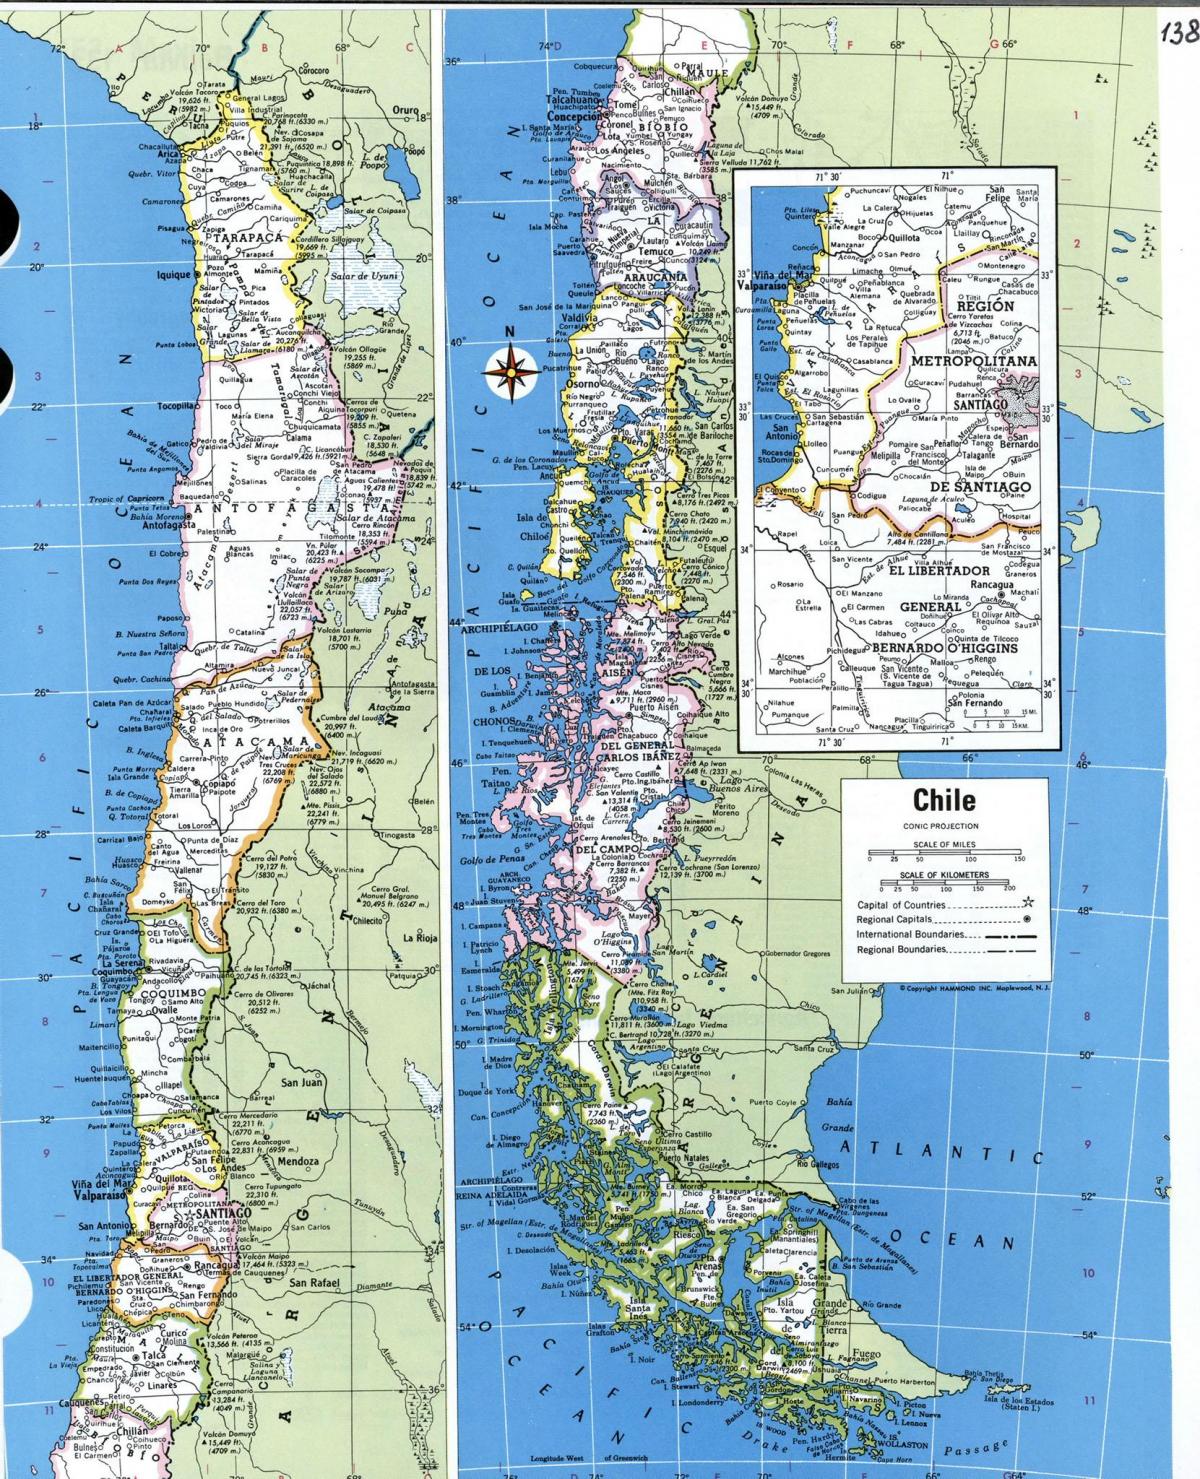 Mapa detalhado do Chile